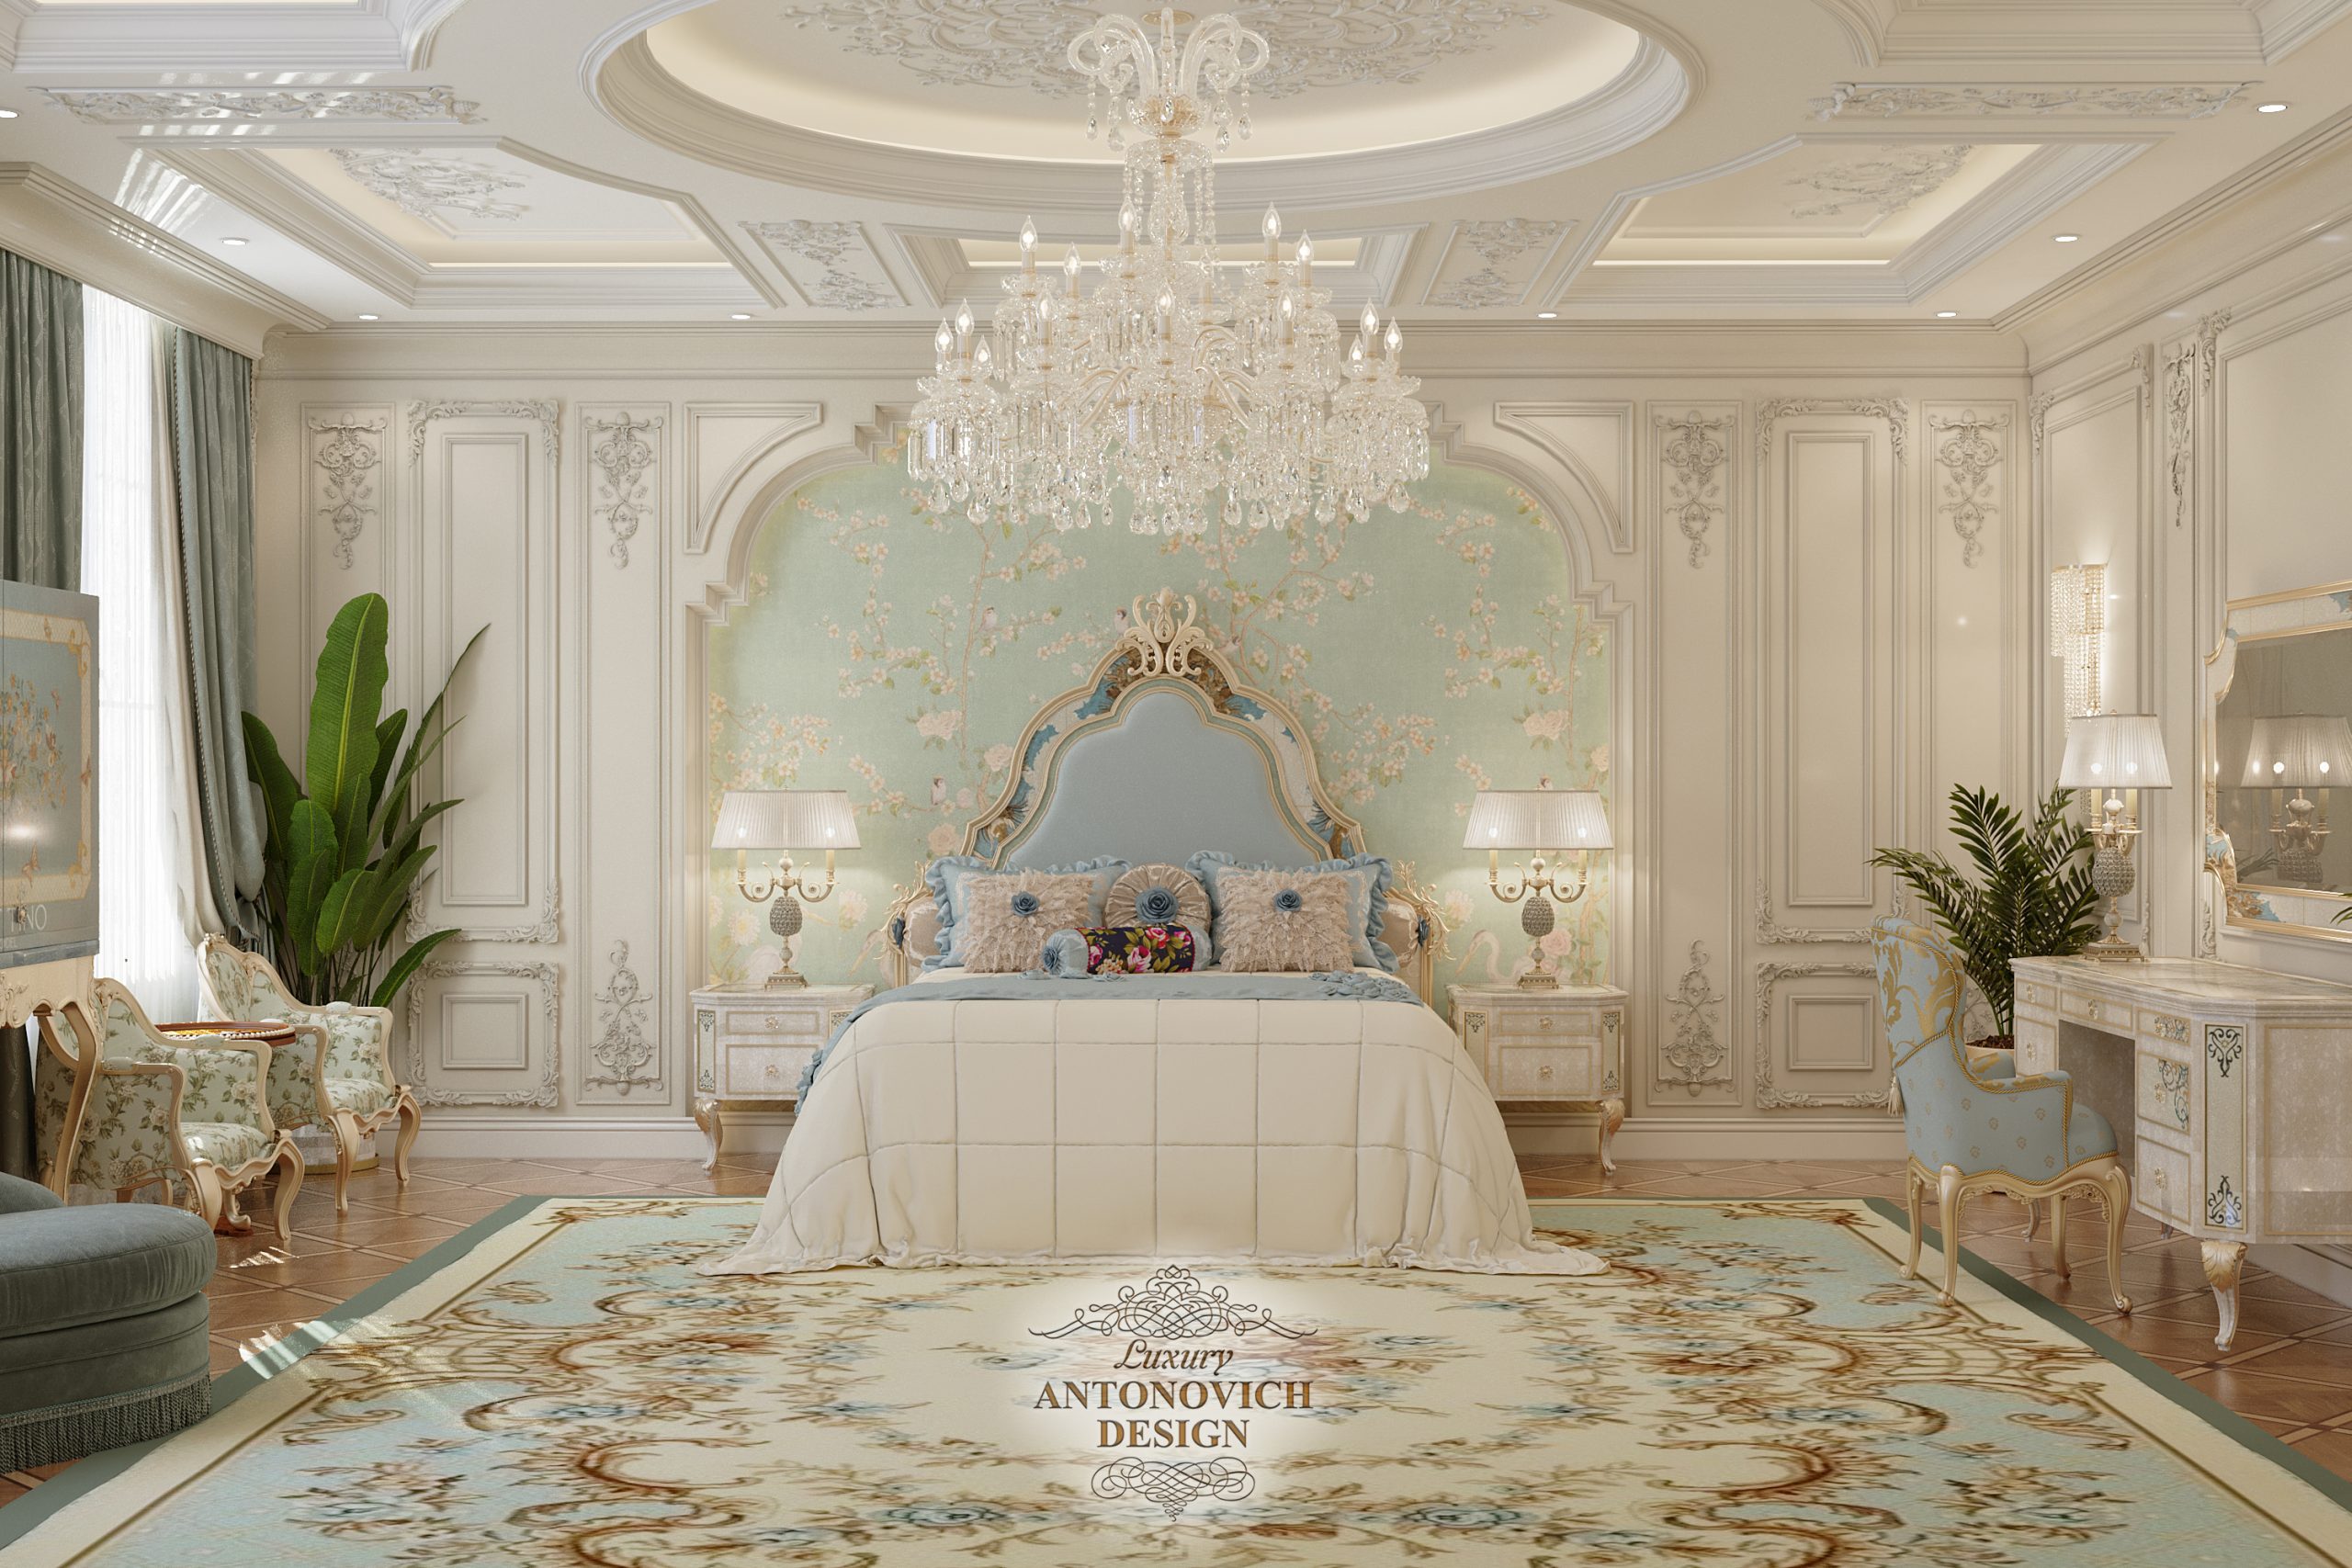 Витончене настінне панно з рослинними мотивами, дорогий оксамитовий текстиль в інтер'єрі спальні в розкішному класичному стилі